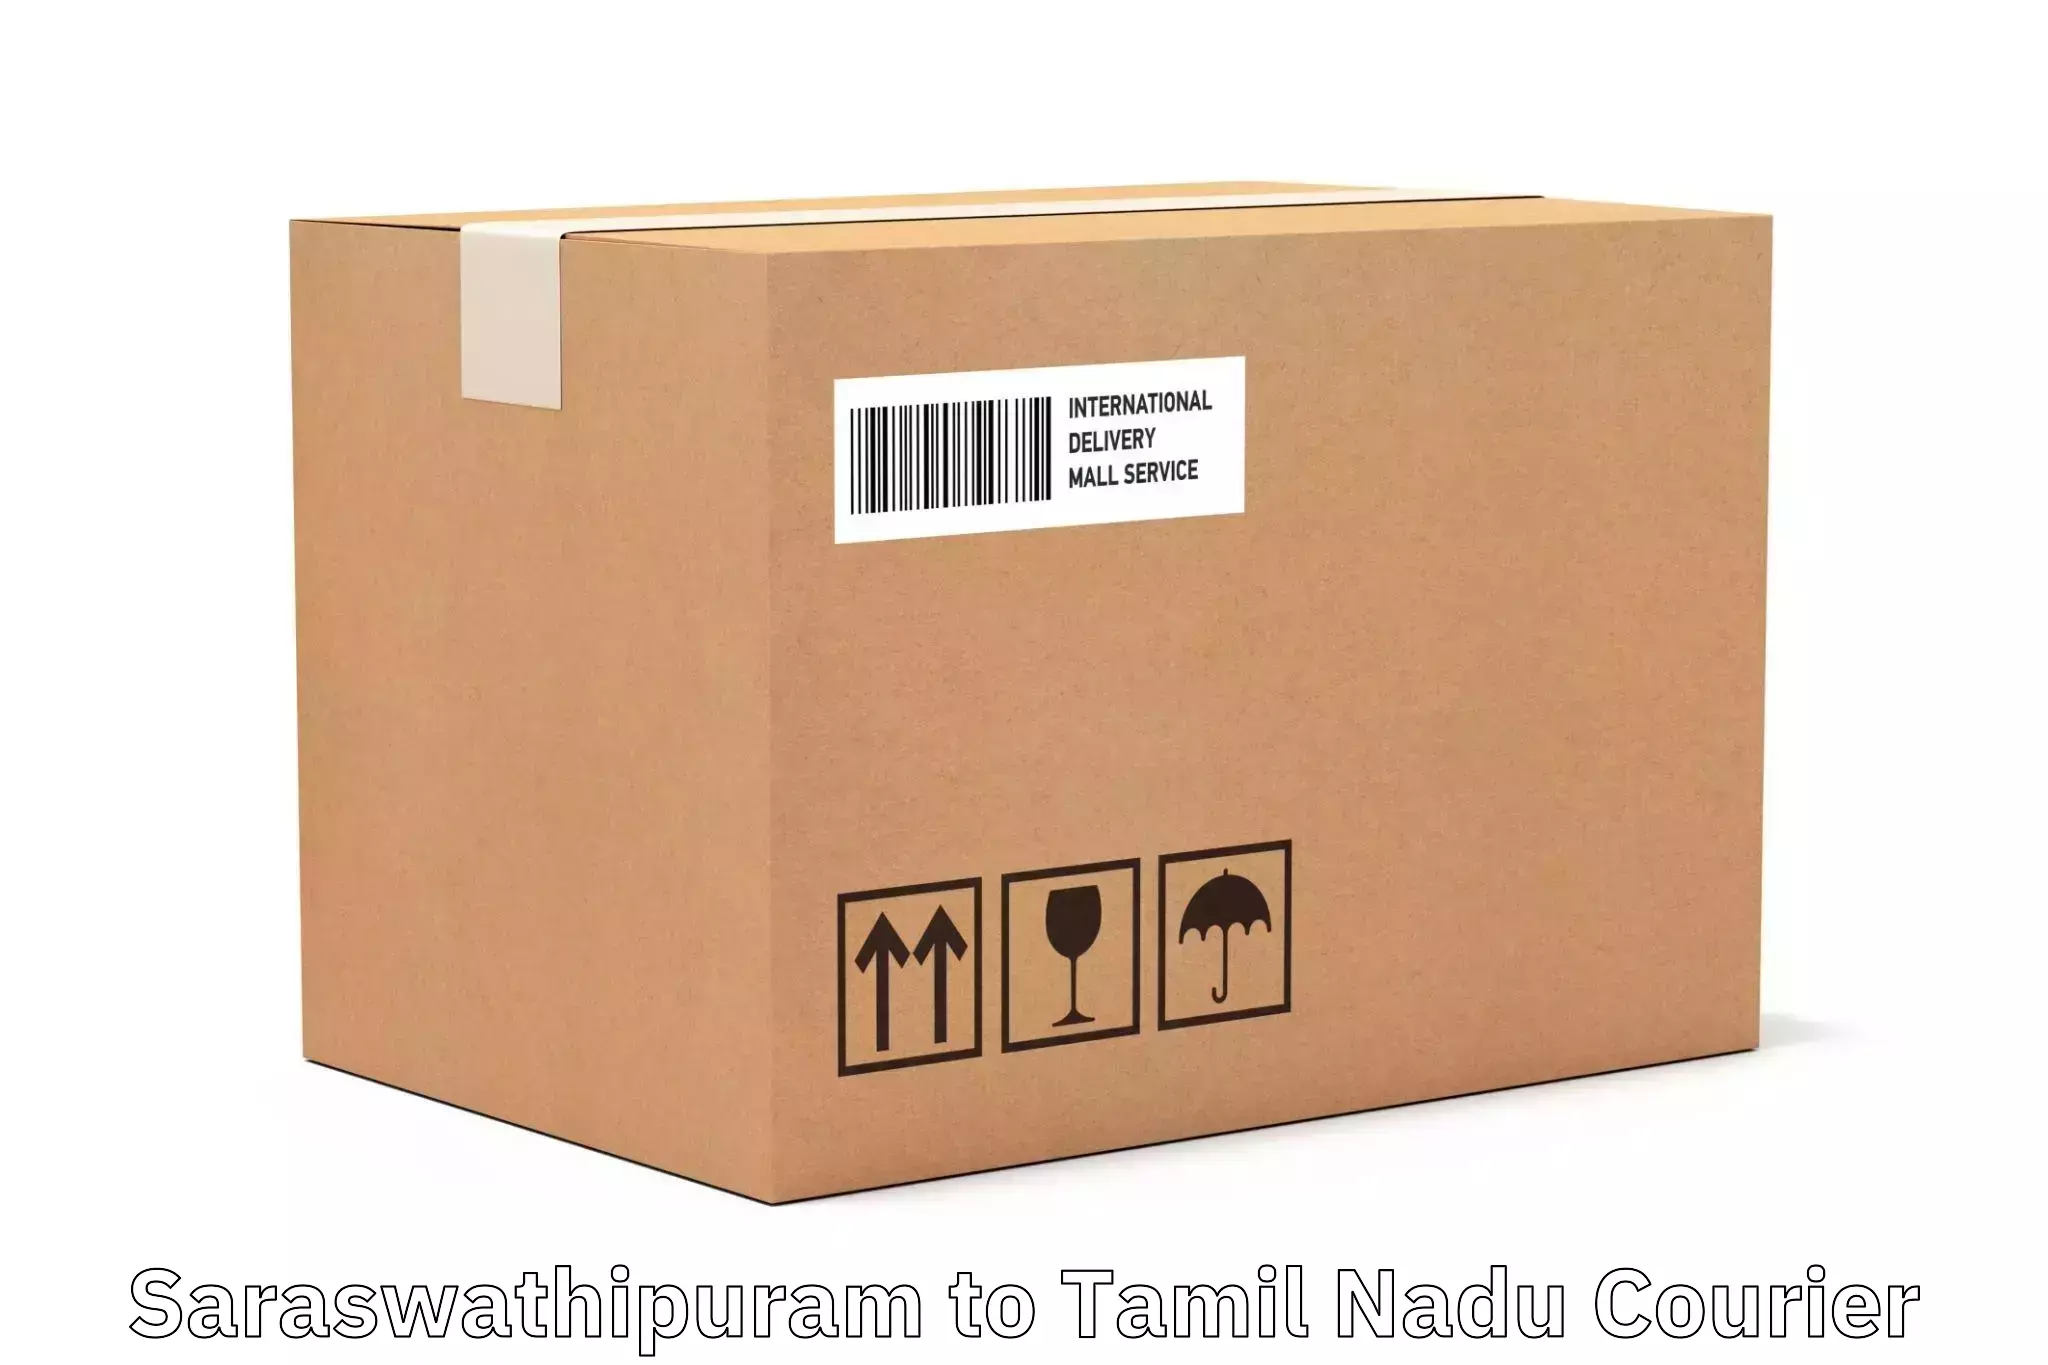 Simplified shipping solutions Saraswathipuram to Perunali